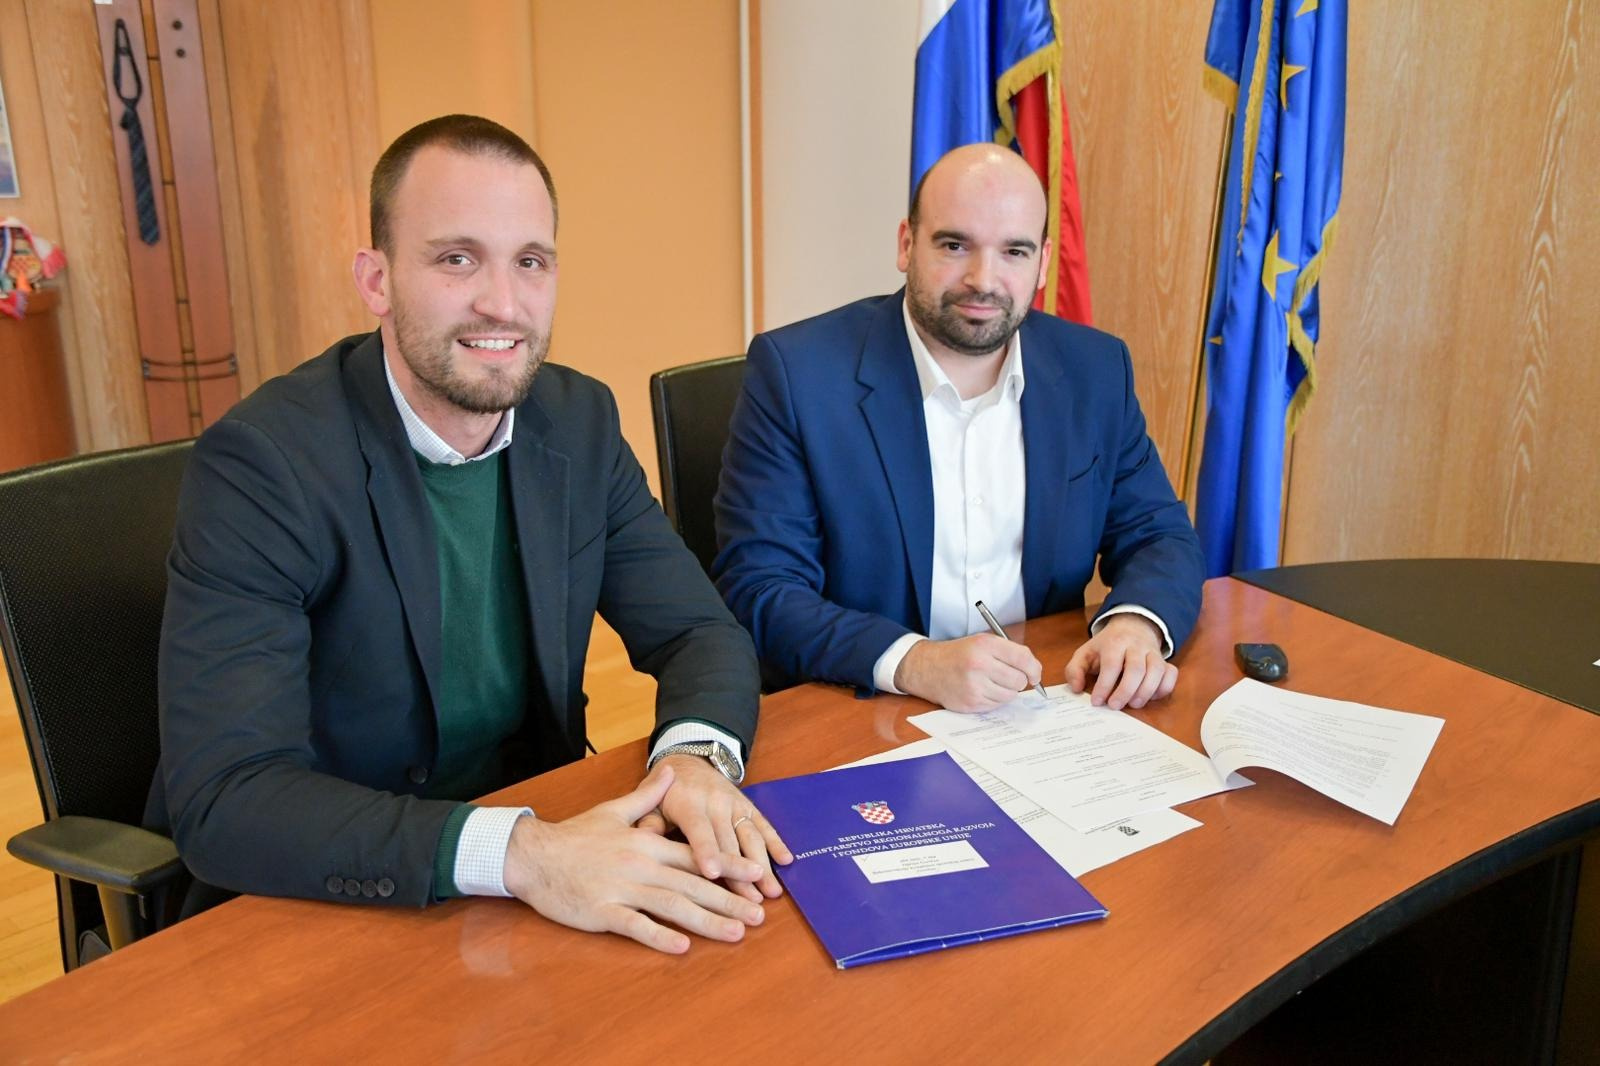 Šime Erlić i Emanuel Sinkovič potpisuju ugovor za dodjelu bespovratnih sredstava 